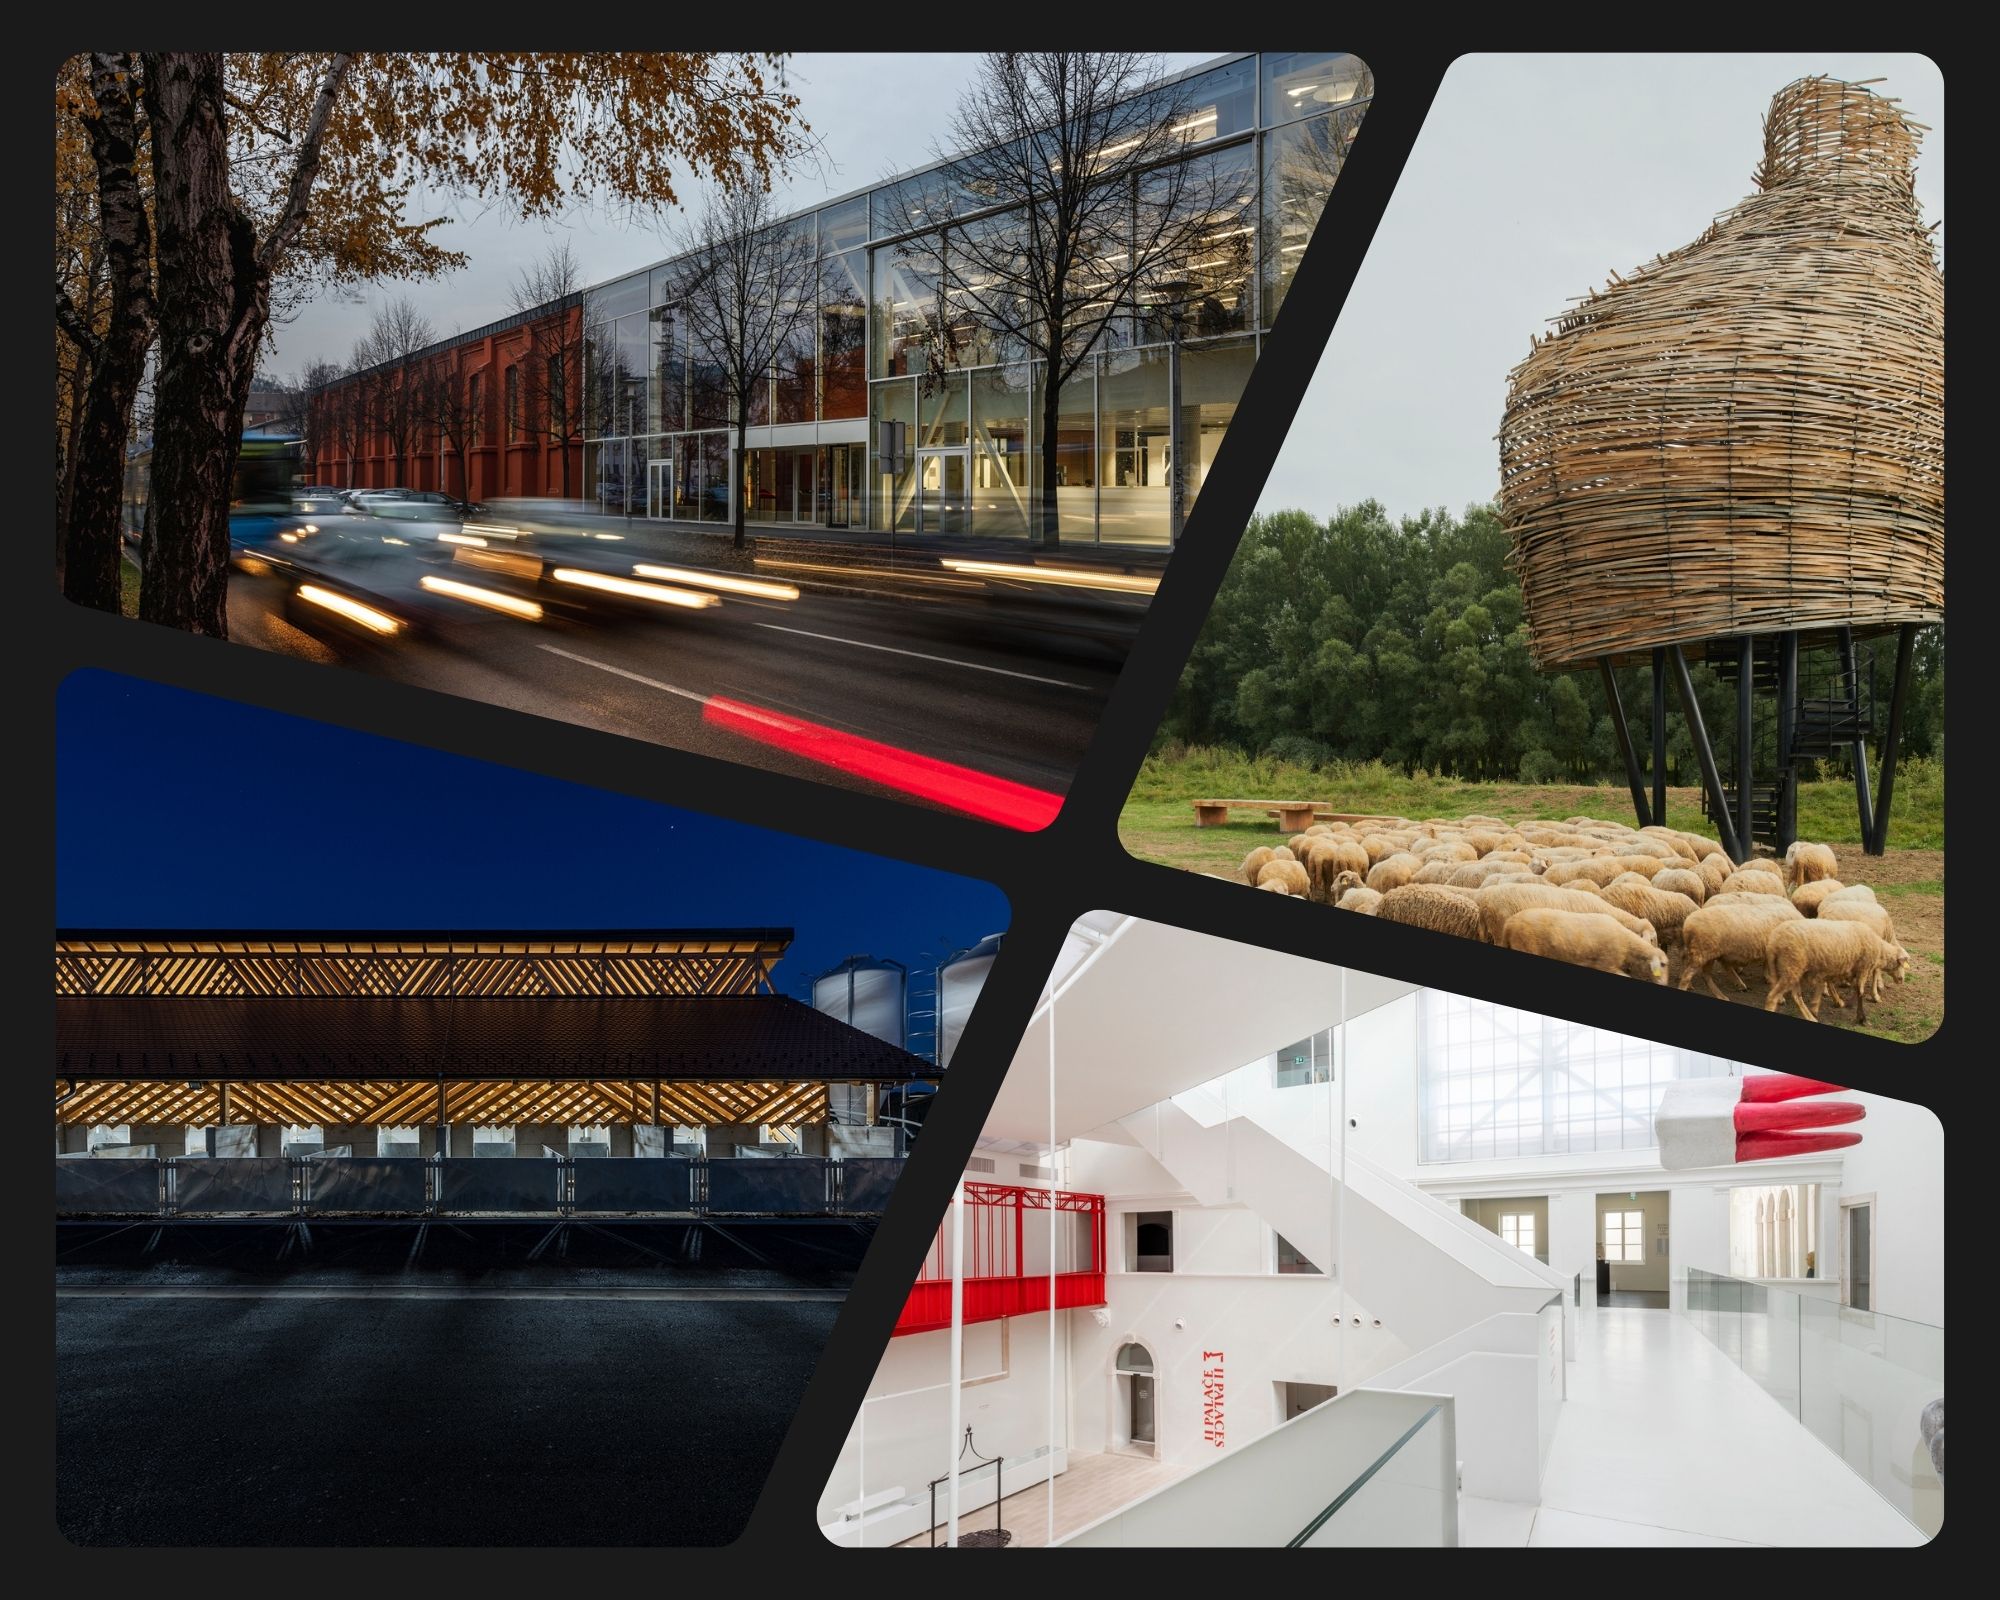 Nominirani arhitektonski projekti za EU nagradu